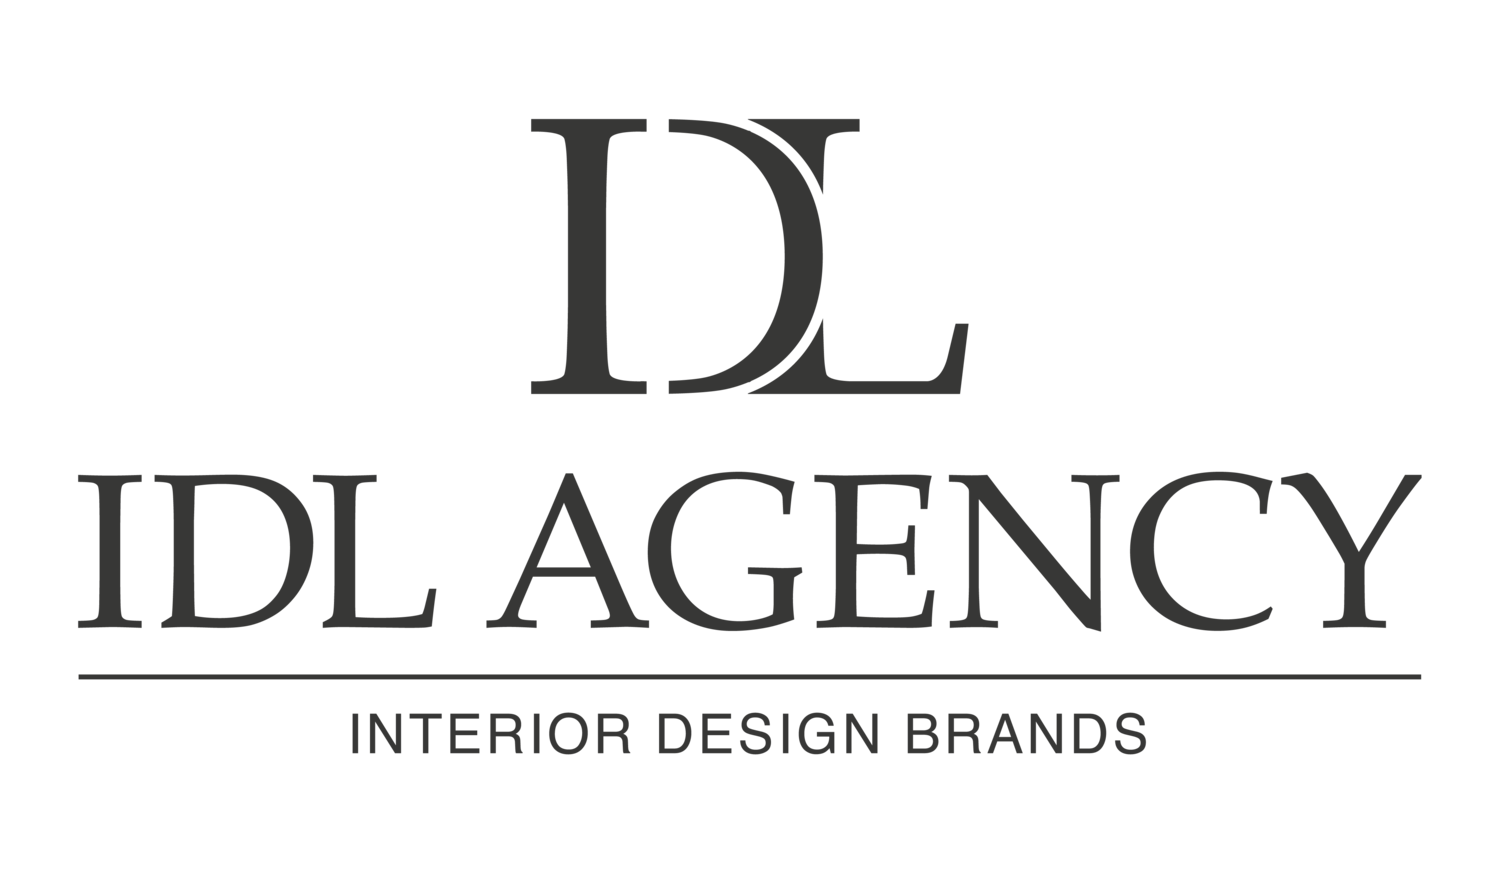 IDL Agency